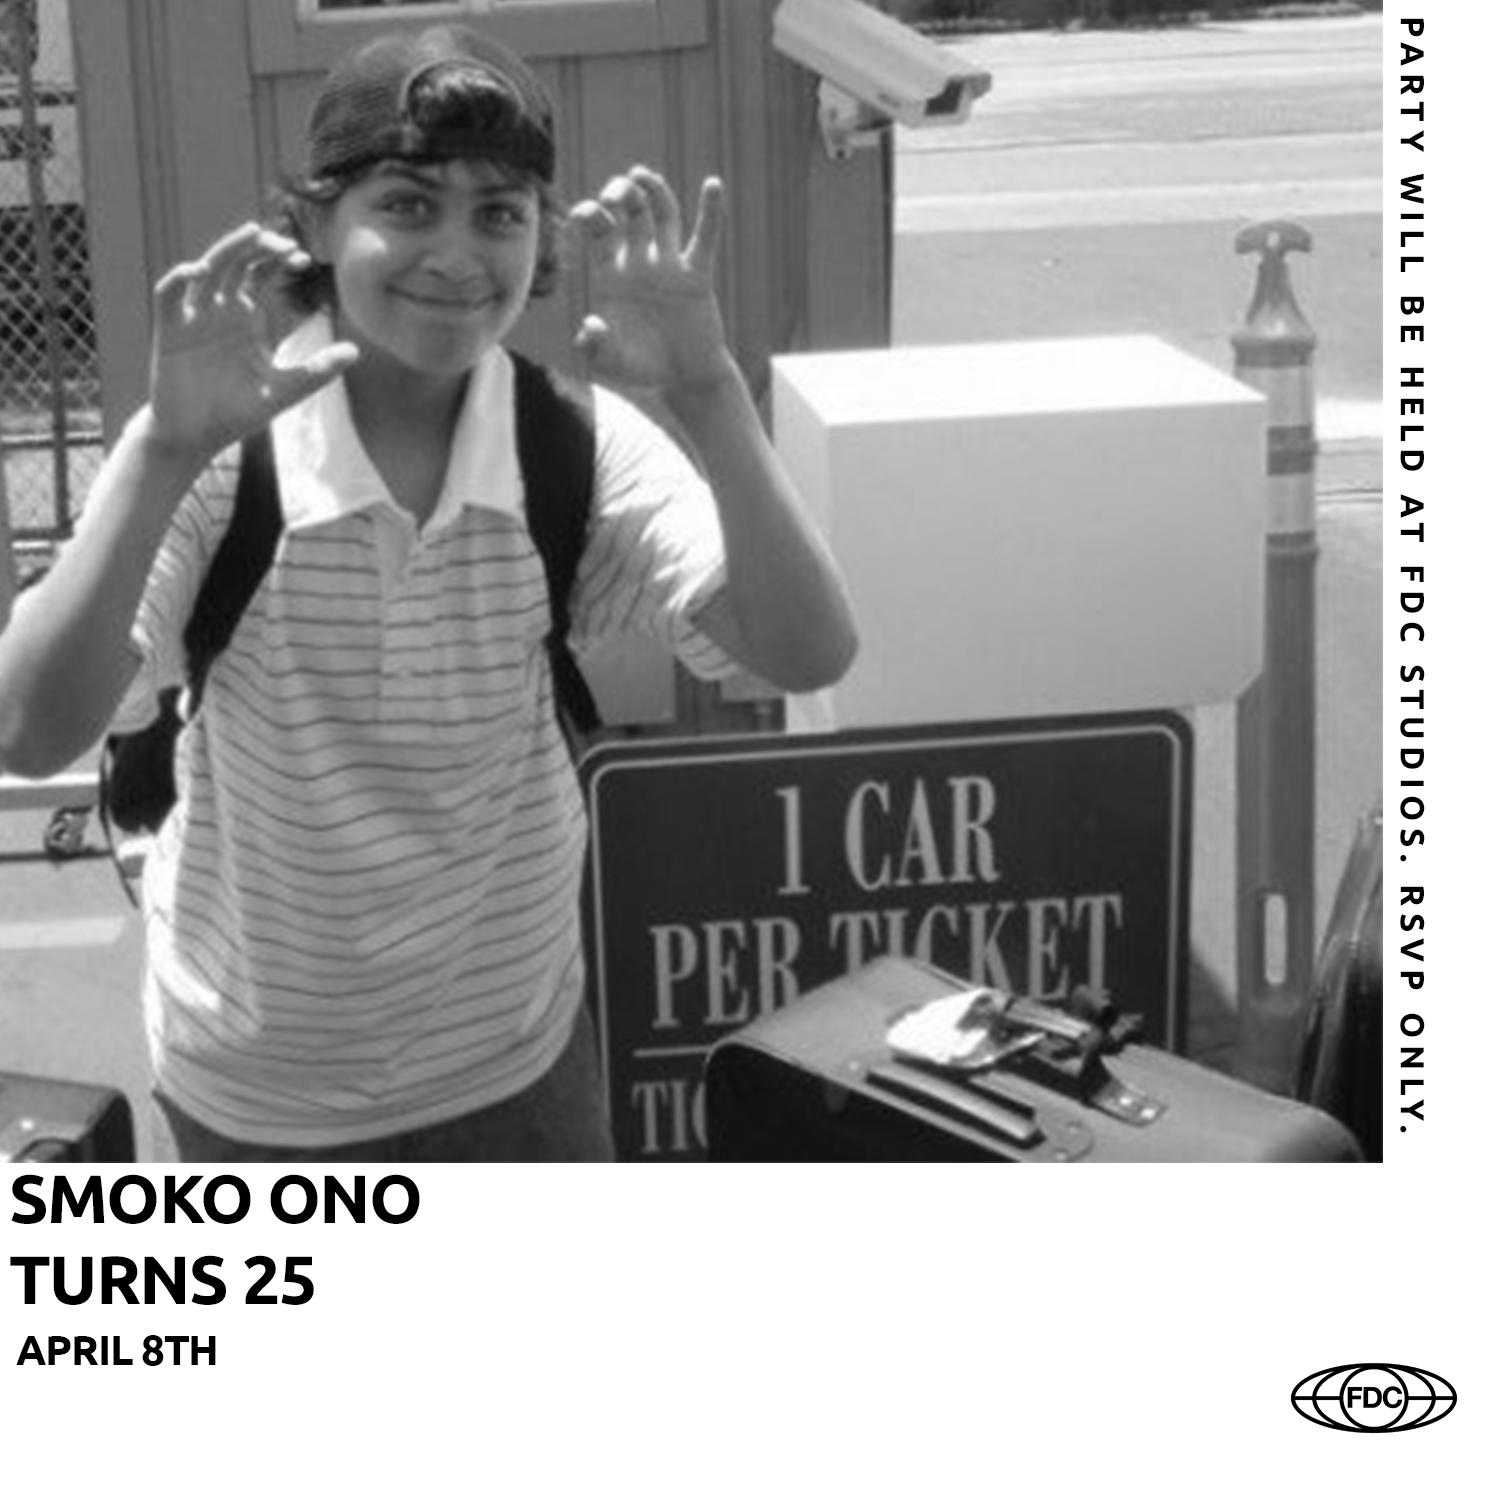 SMOKO ONO TURNS 25